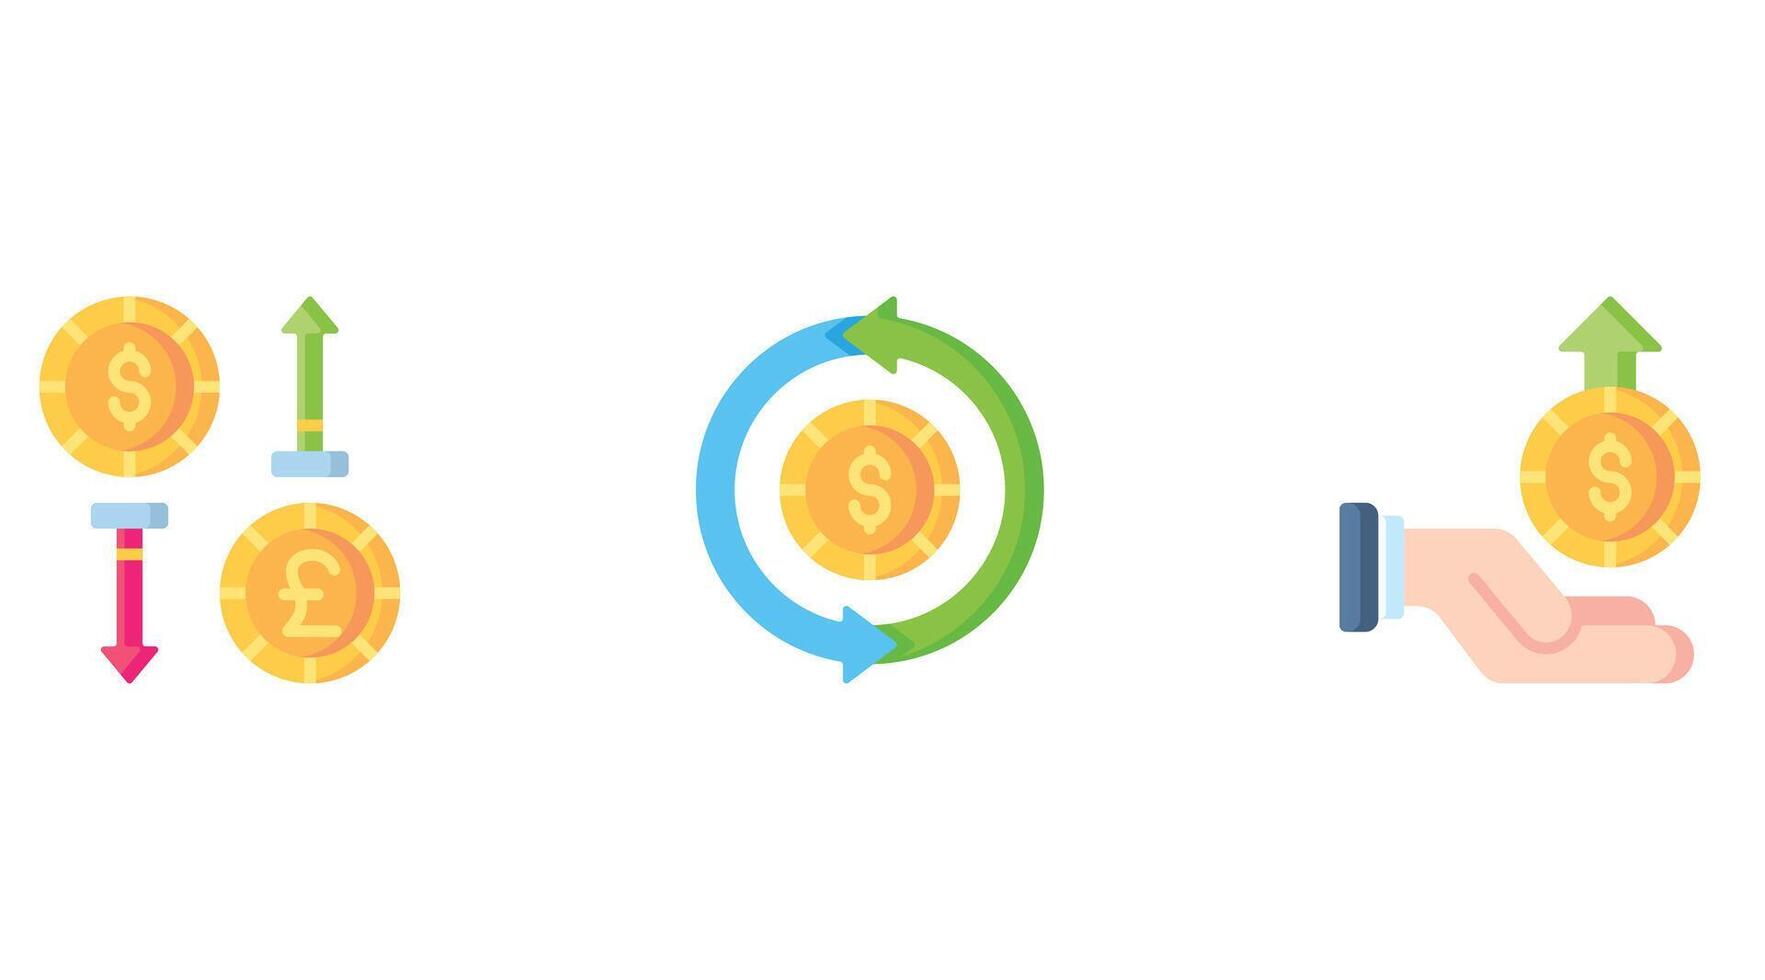 valuta och mynt vektor ikoner uppsättning för företag och finansiera